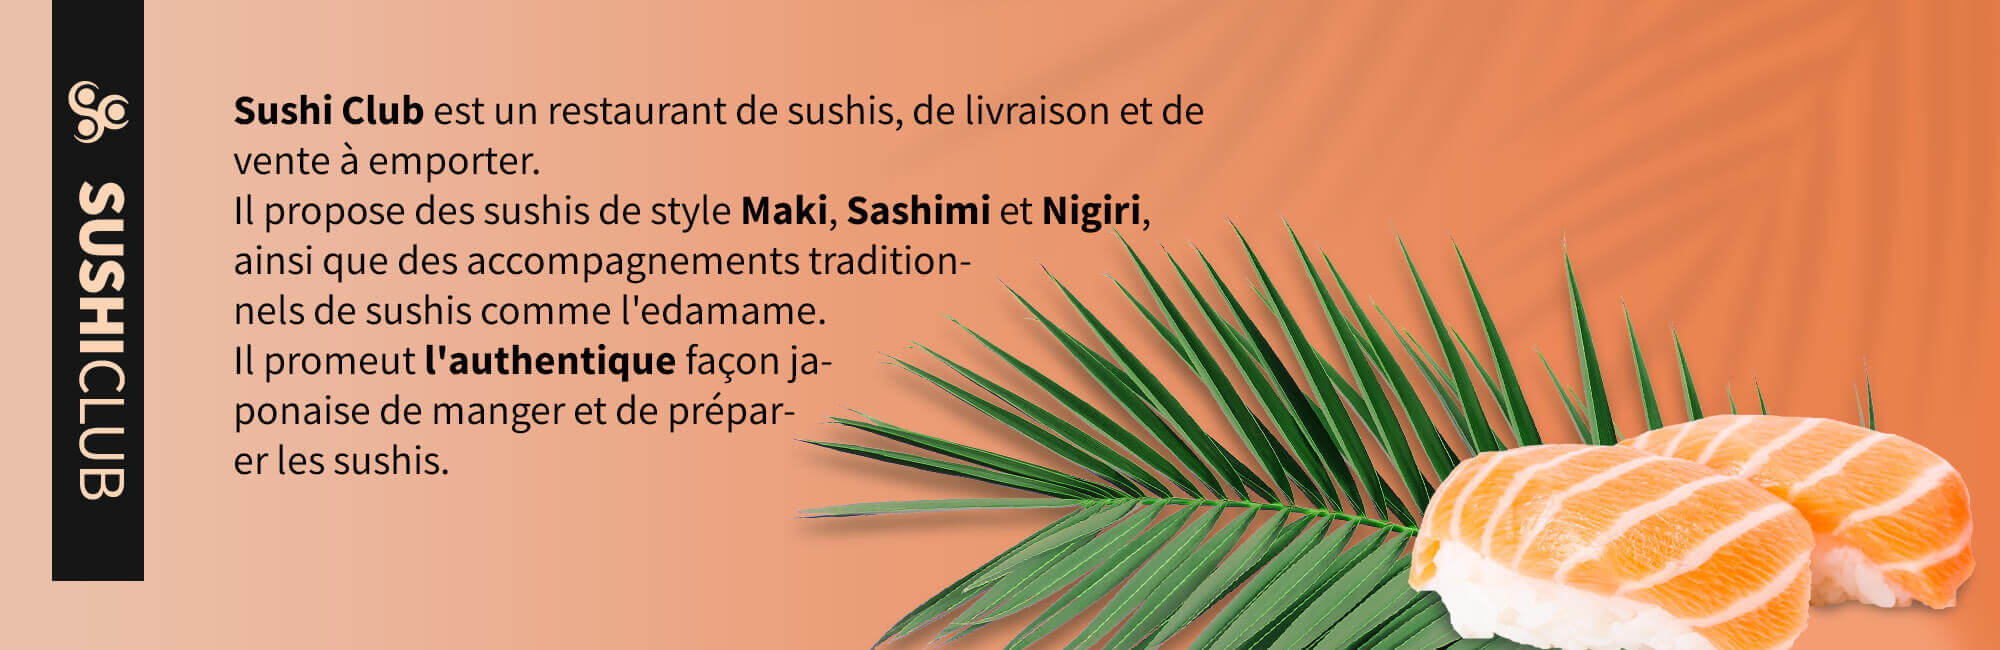 description de marque sushi club